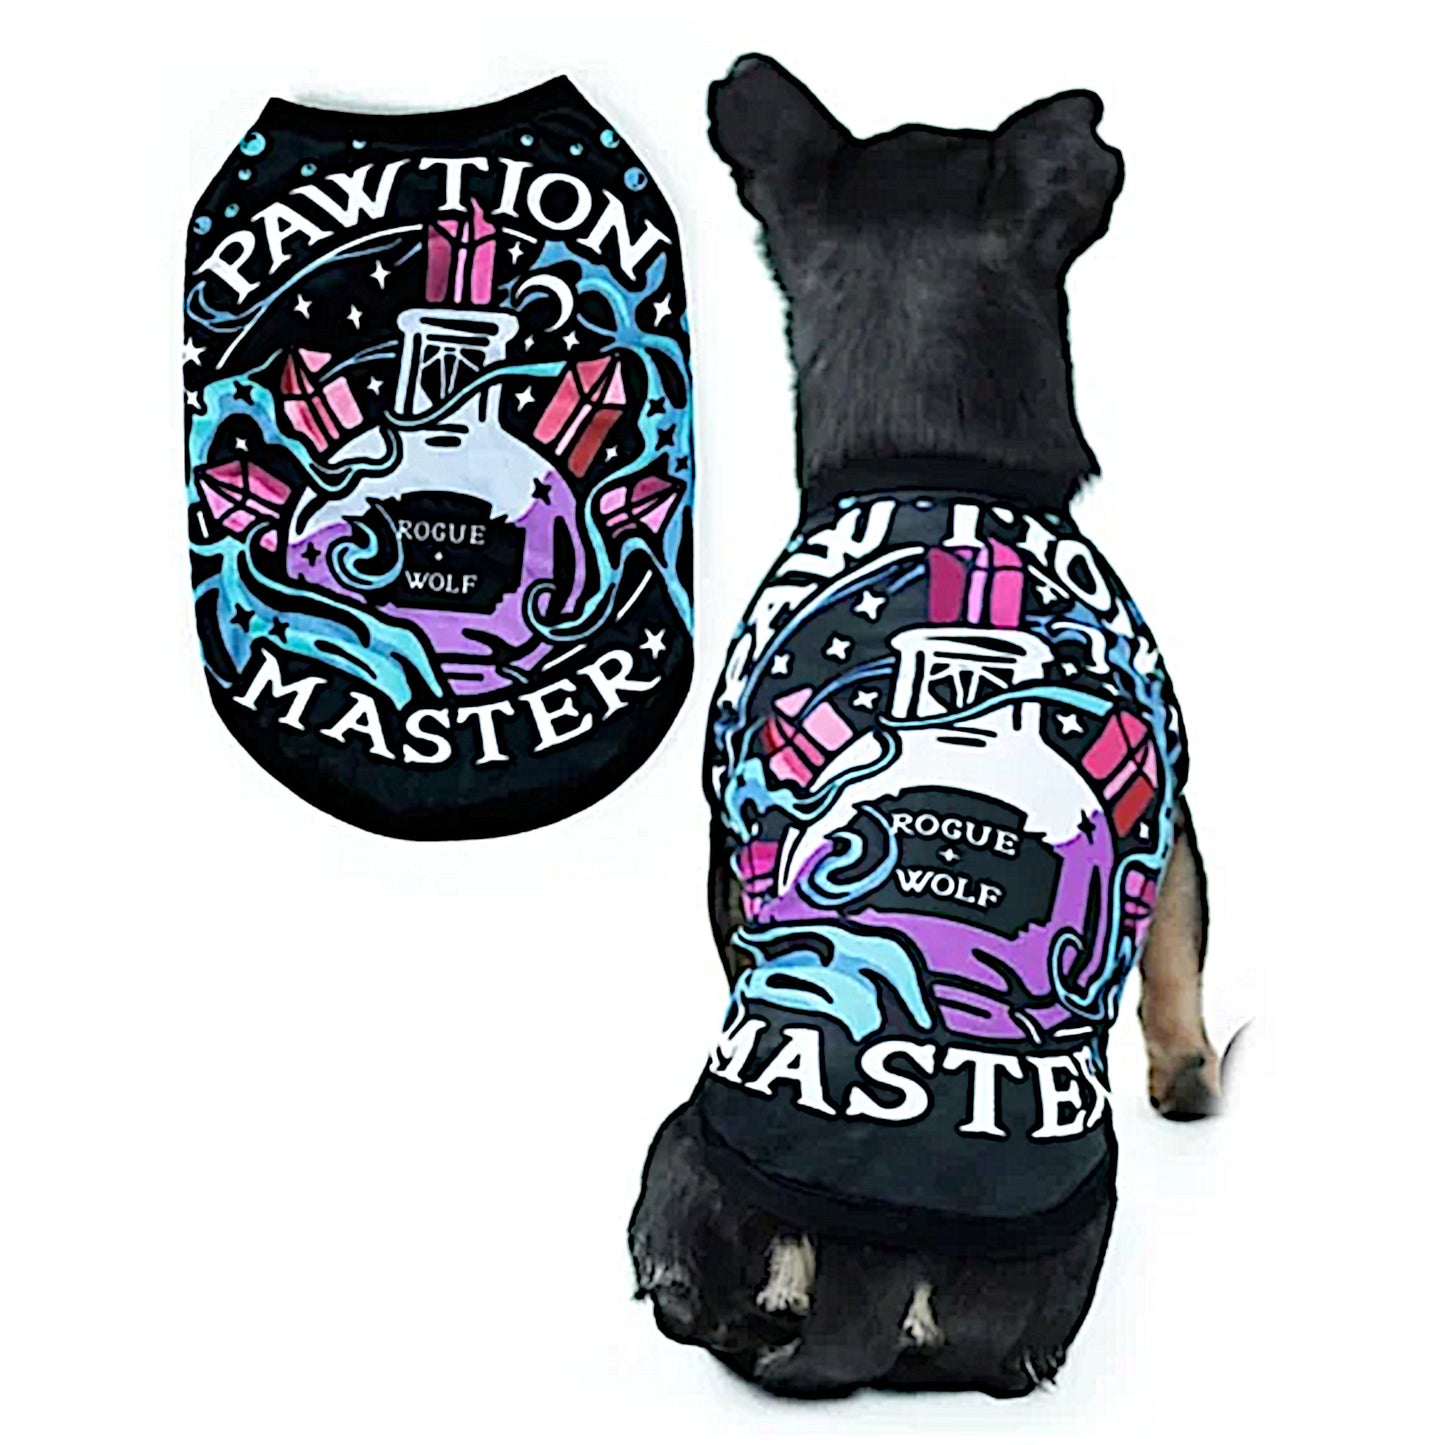 Pawfection Pet Vest | Pawtion Master Soft Comfy Magical Purple Black Pet Vest - A Gothic Universe - Pet Vests